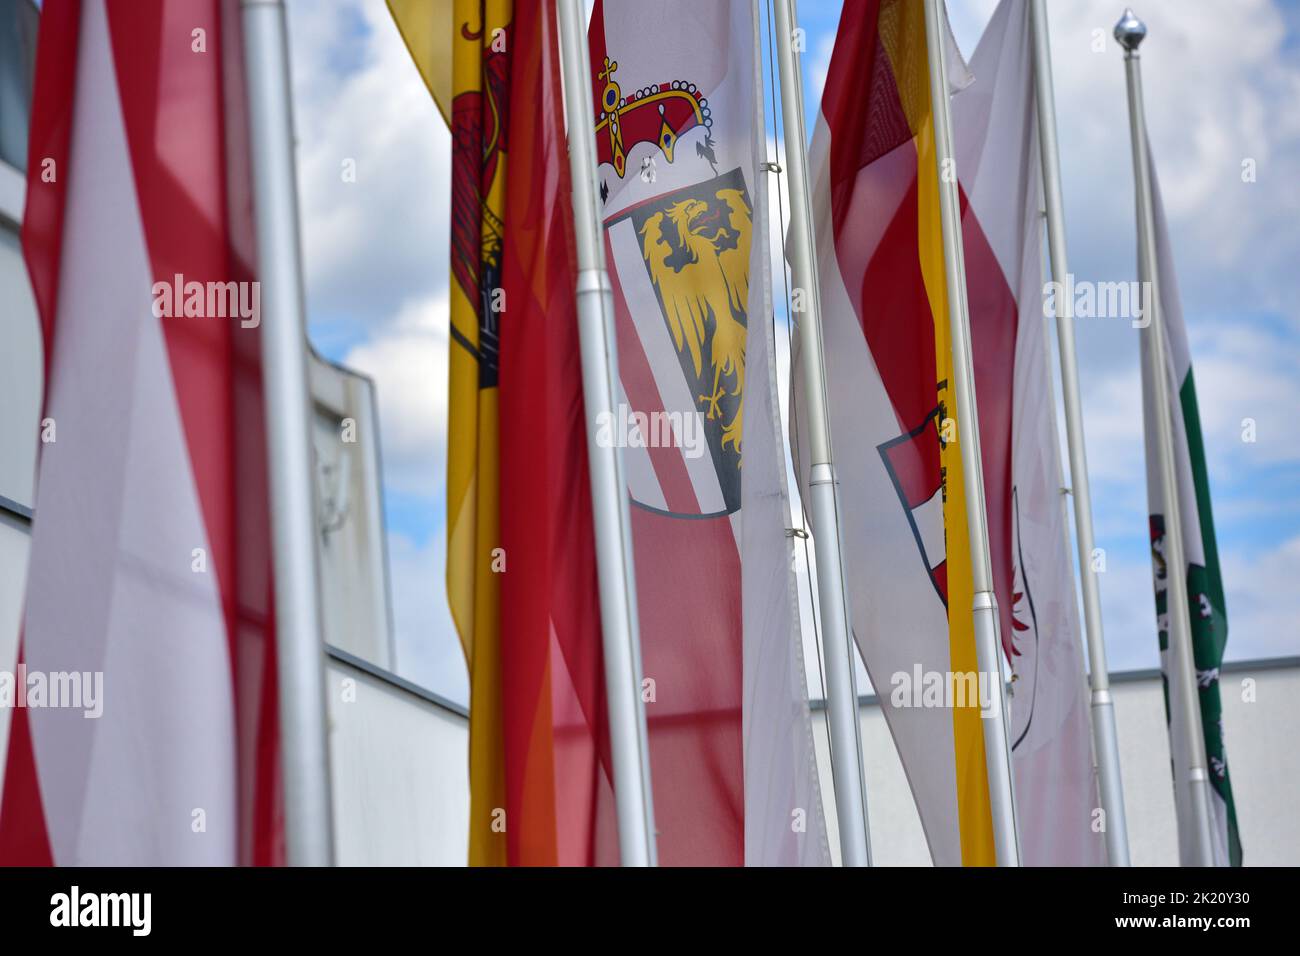 Banderas de los estados federales austriacos delante de un recinto ferial Foto de stock